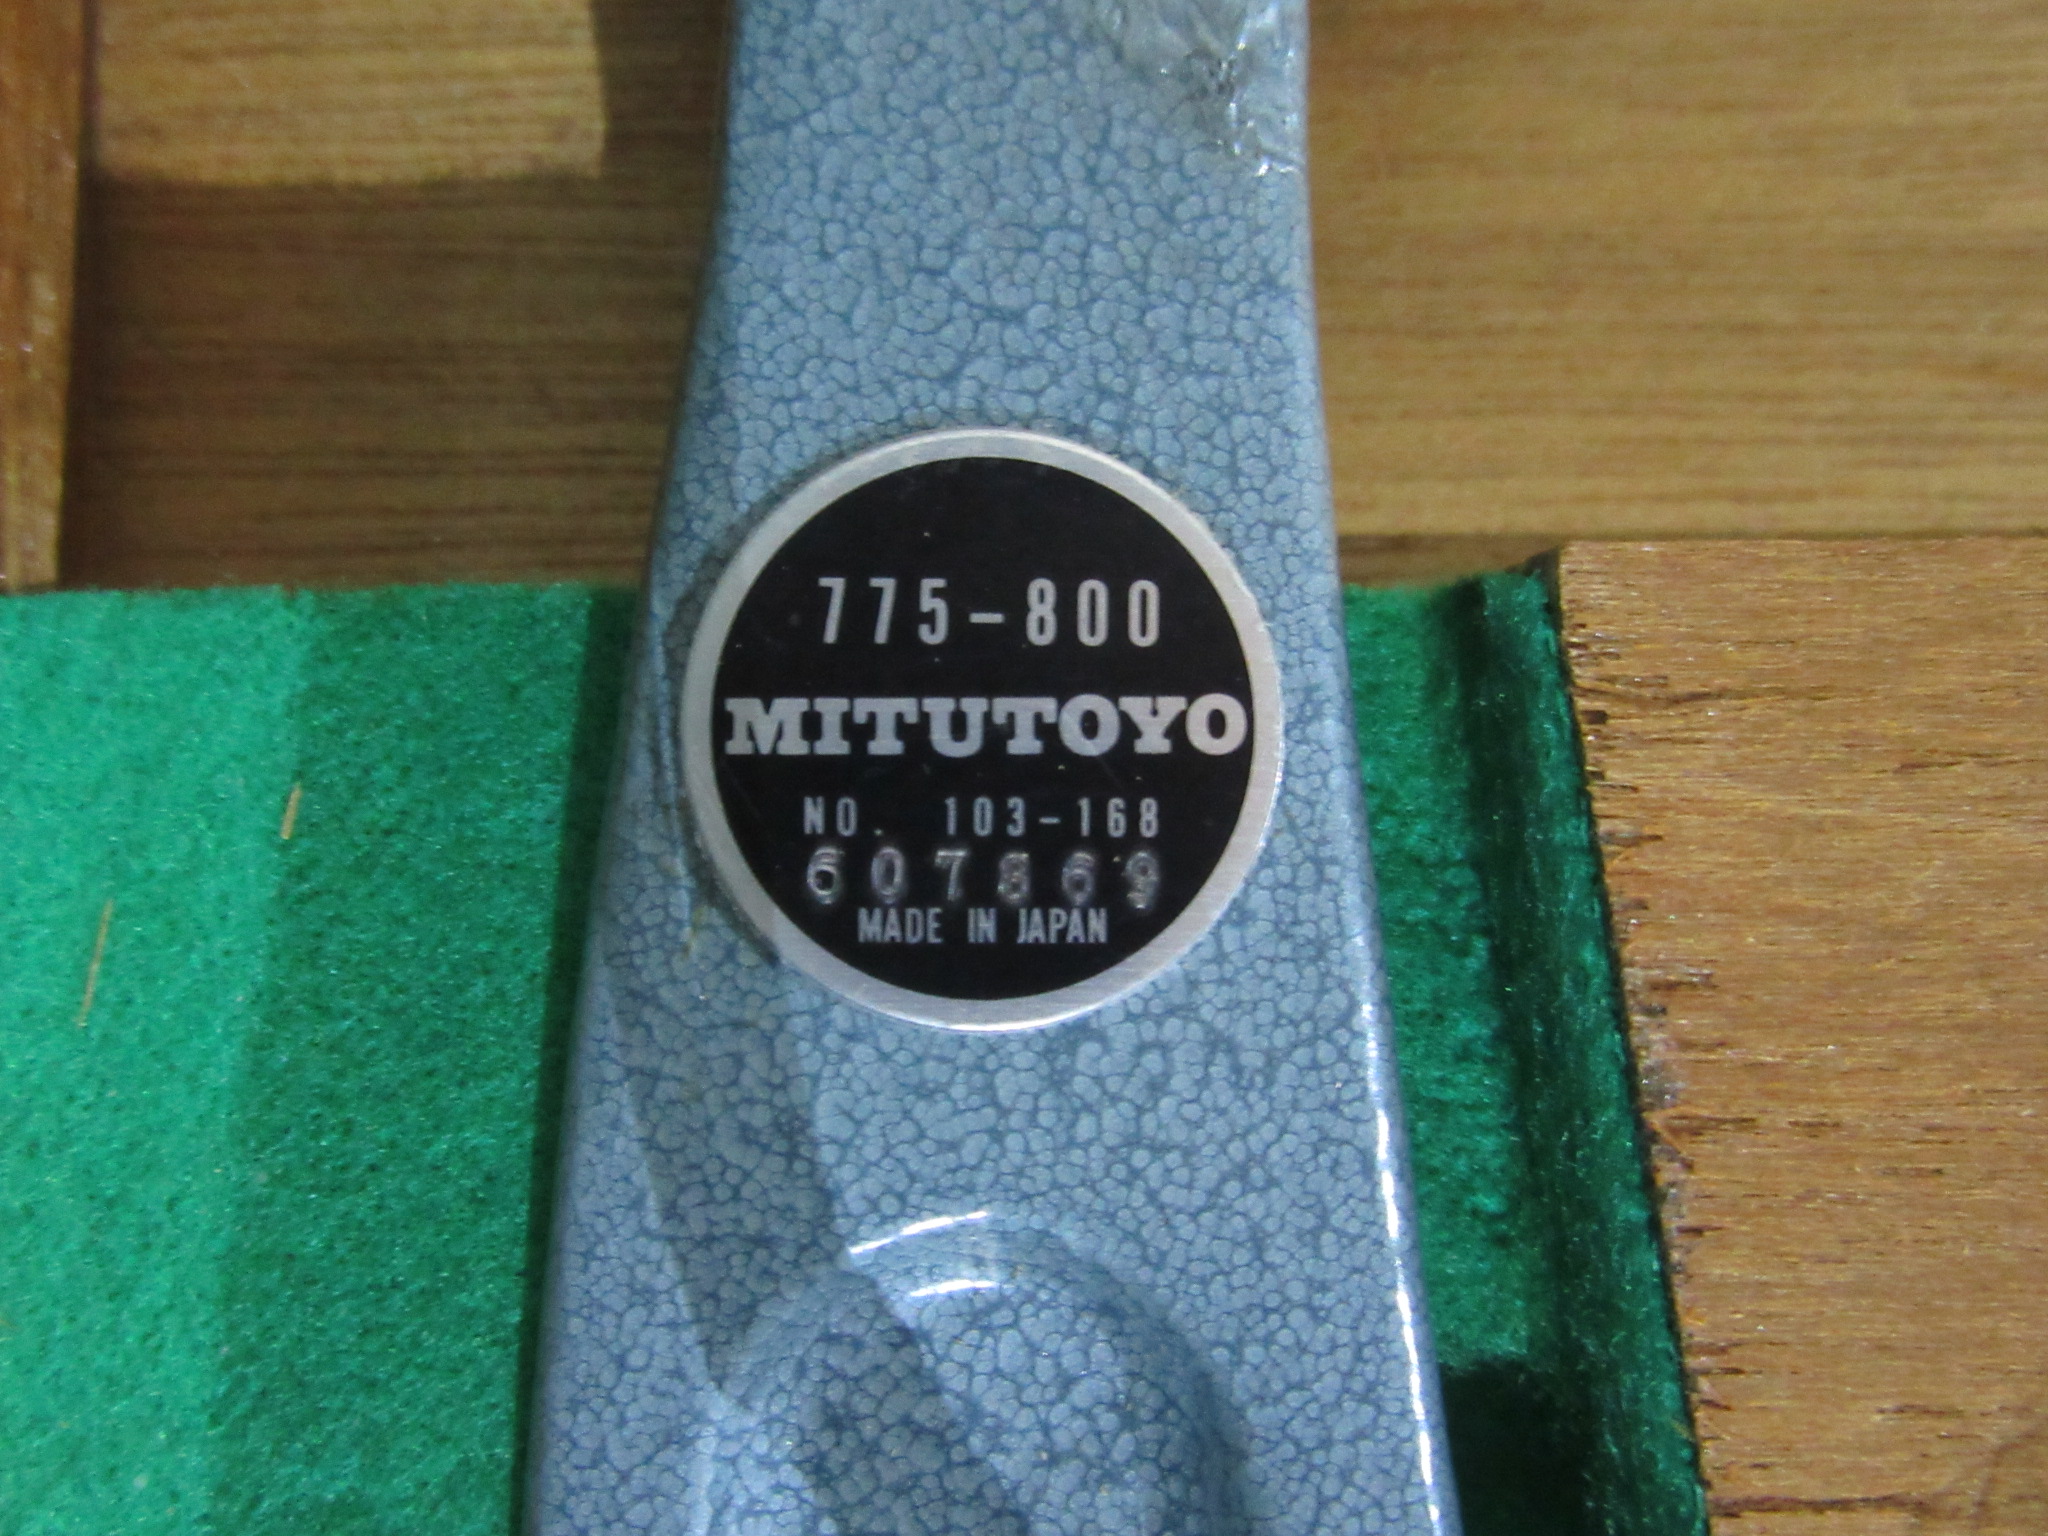 中古測定機 【外側マイクロメータ】NO.103-168 ミツトヨ/Mitutoyo